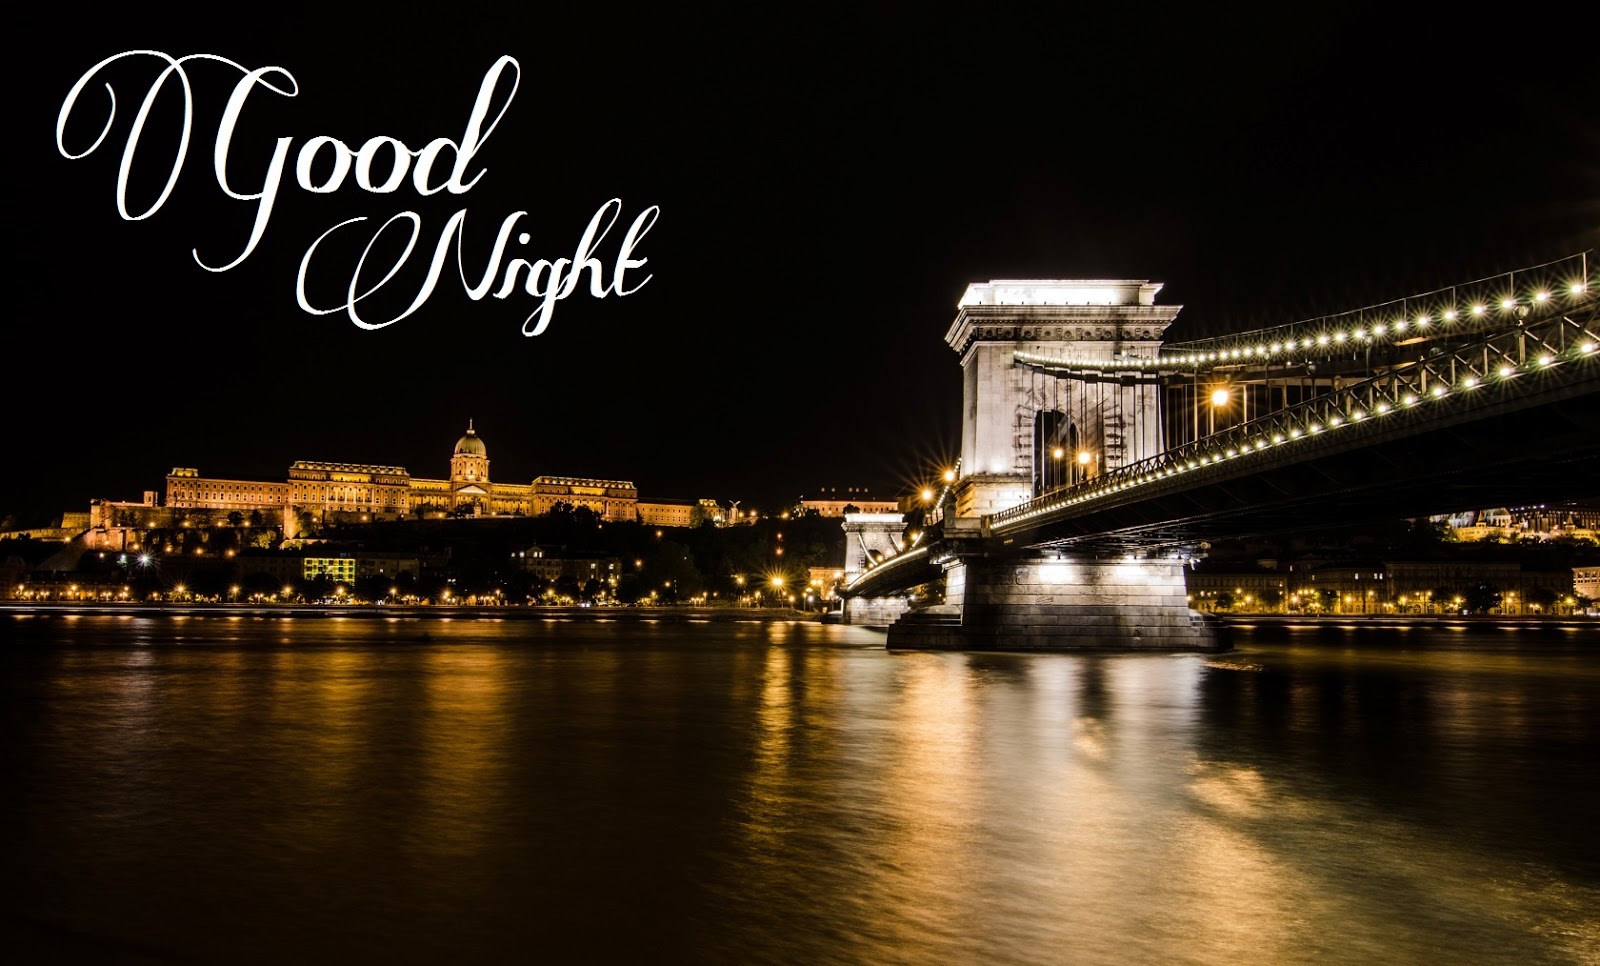 50+] Good Night Wallpapers for Facebook - WallpaperSafari